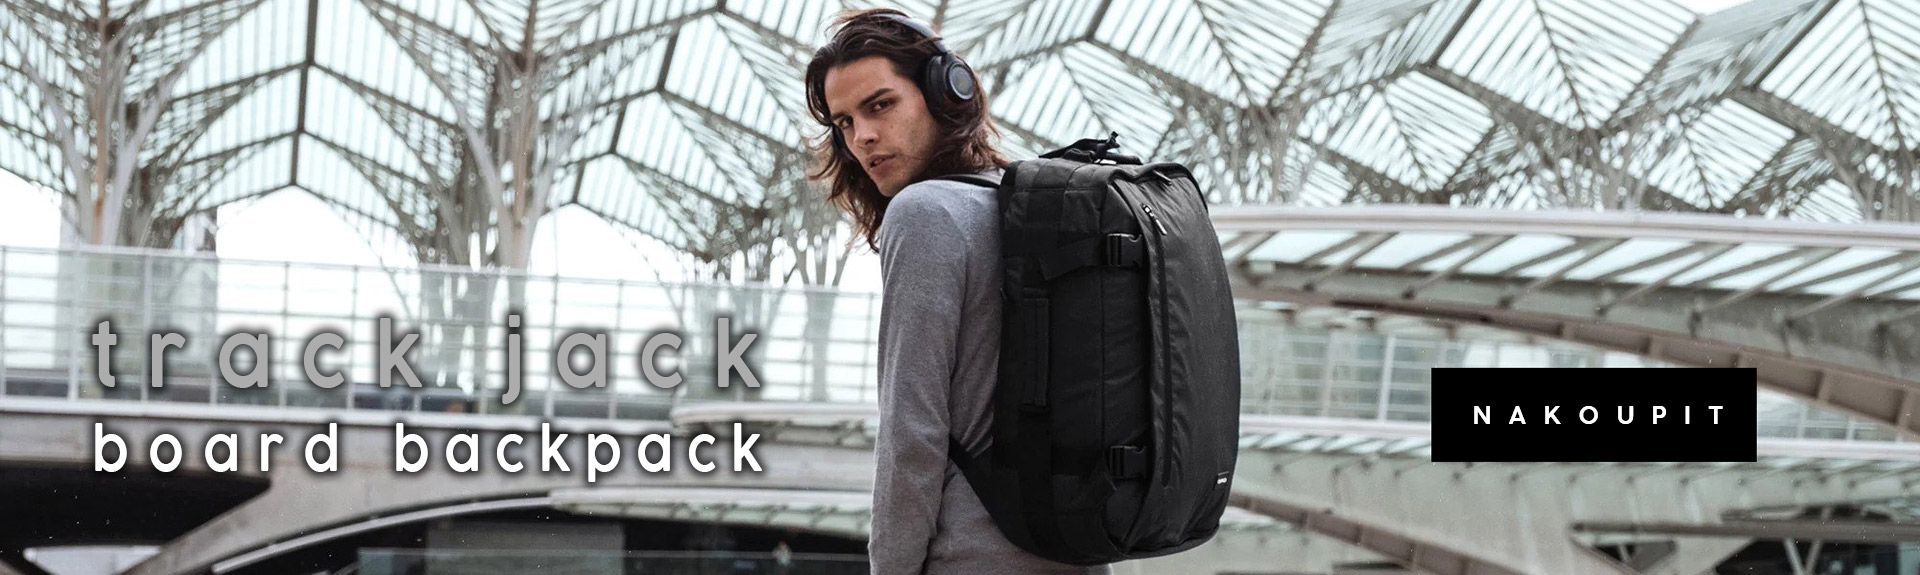 Track Jack Board Backpack